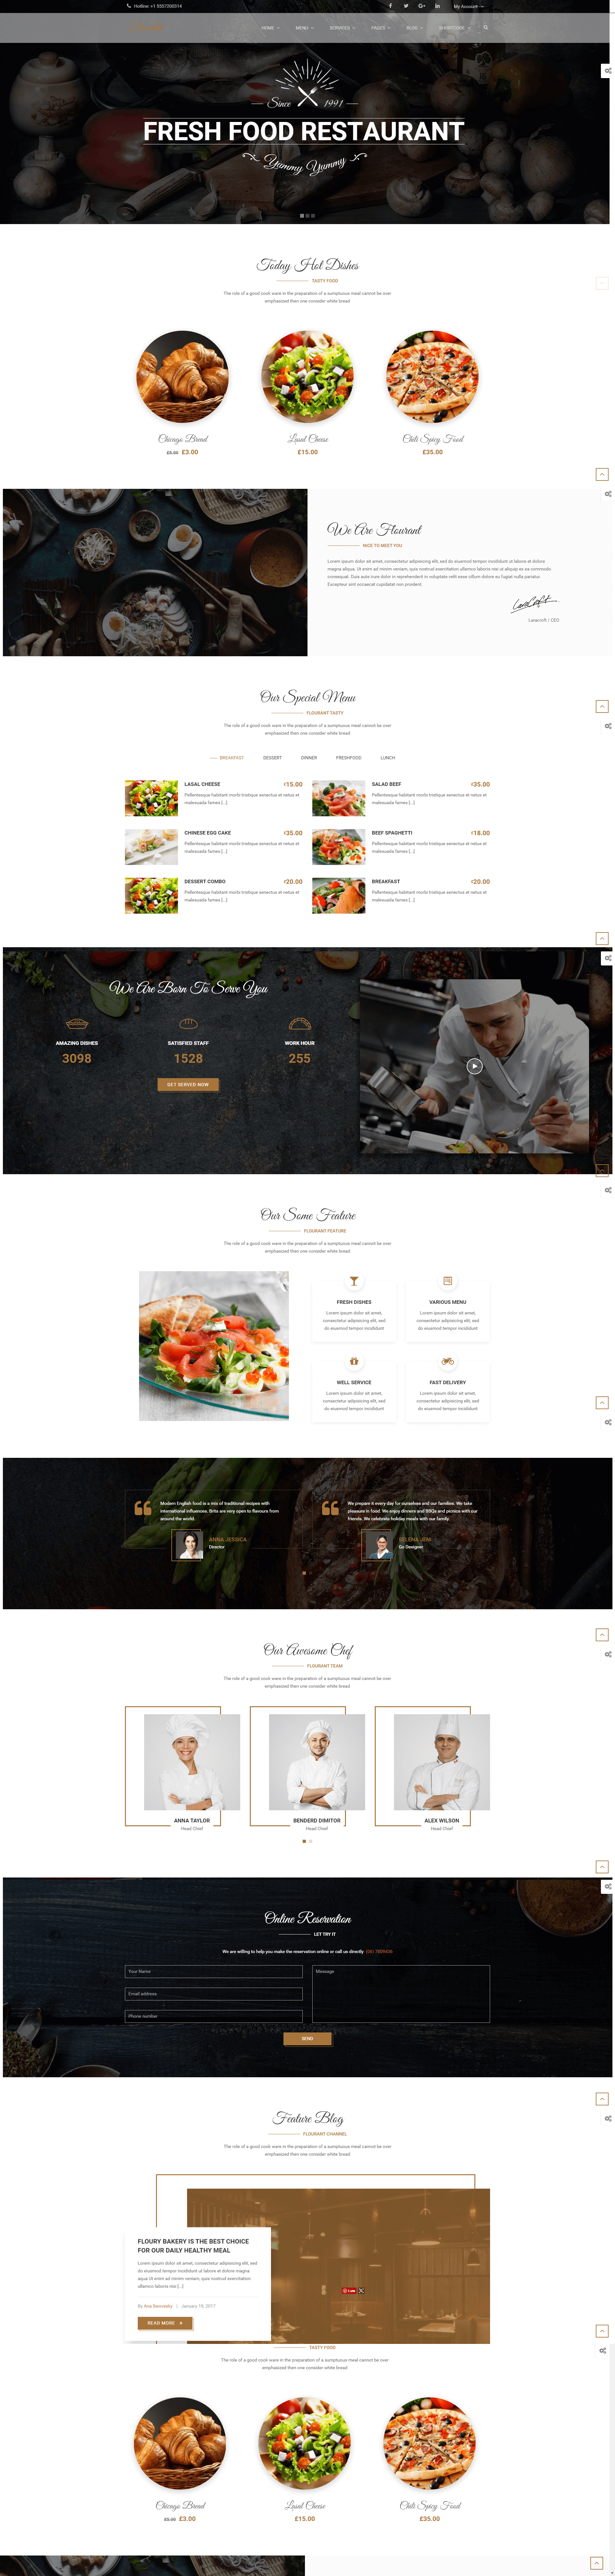 Mẫu thiết kế website nhà hàng chuyên nghiệp